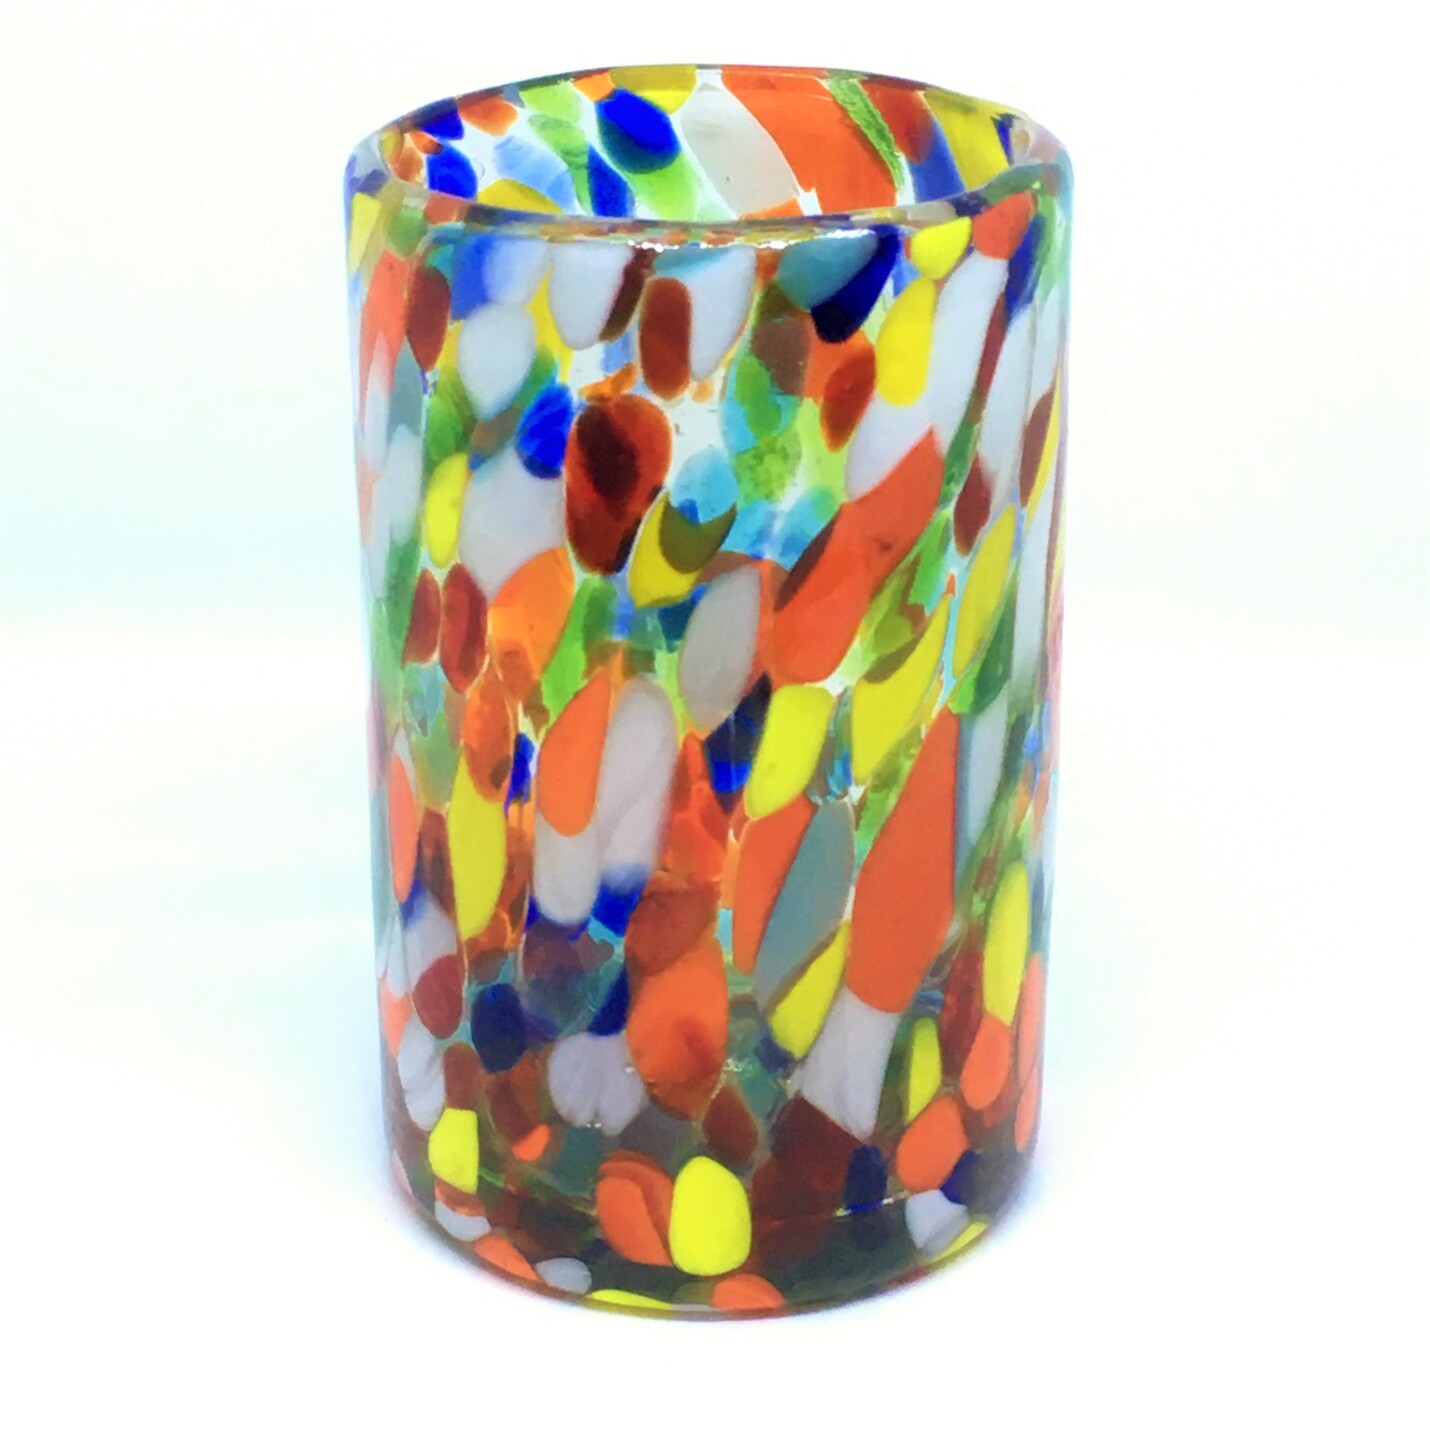 Vasos de Vidrio Soplado al Mayoreo / vasos grandes 'Confeti Carnaval' / Deje entrar a la primavera en su casa con éste colorido juego de vasos. El decorado con vidrio multicolor los hace resaltar en cualquier lugar.